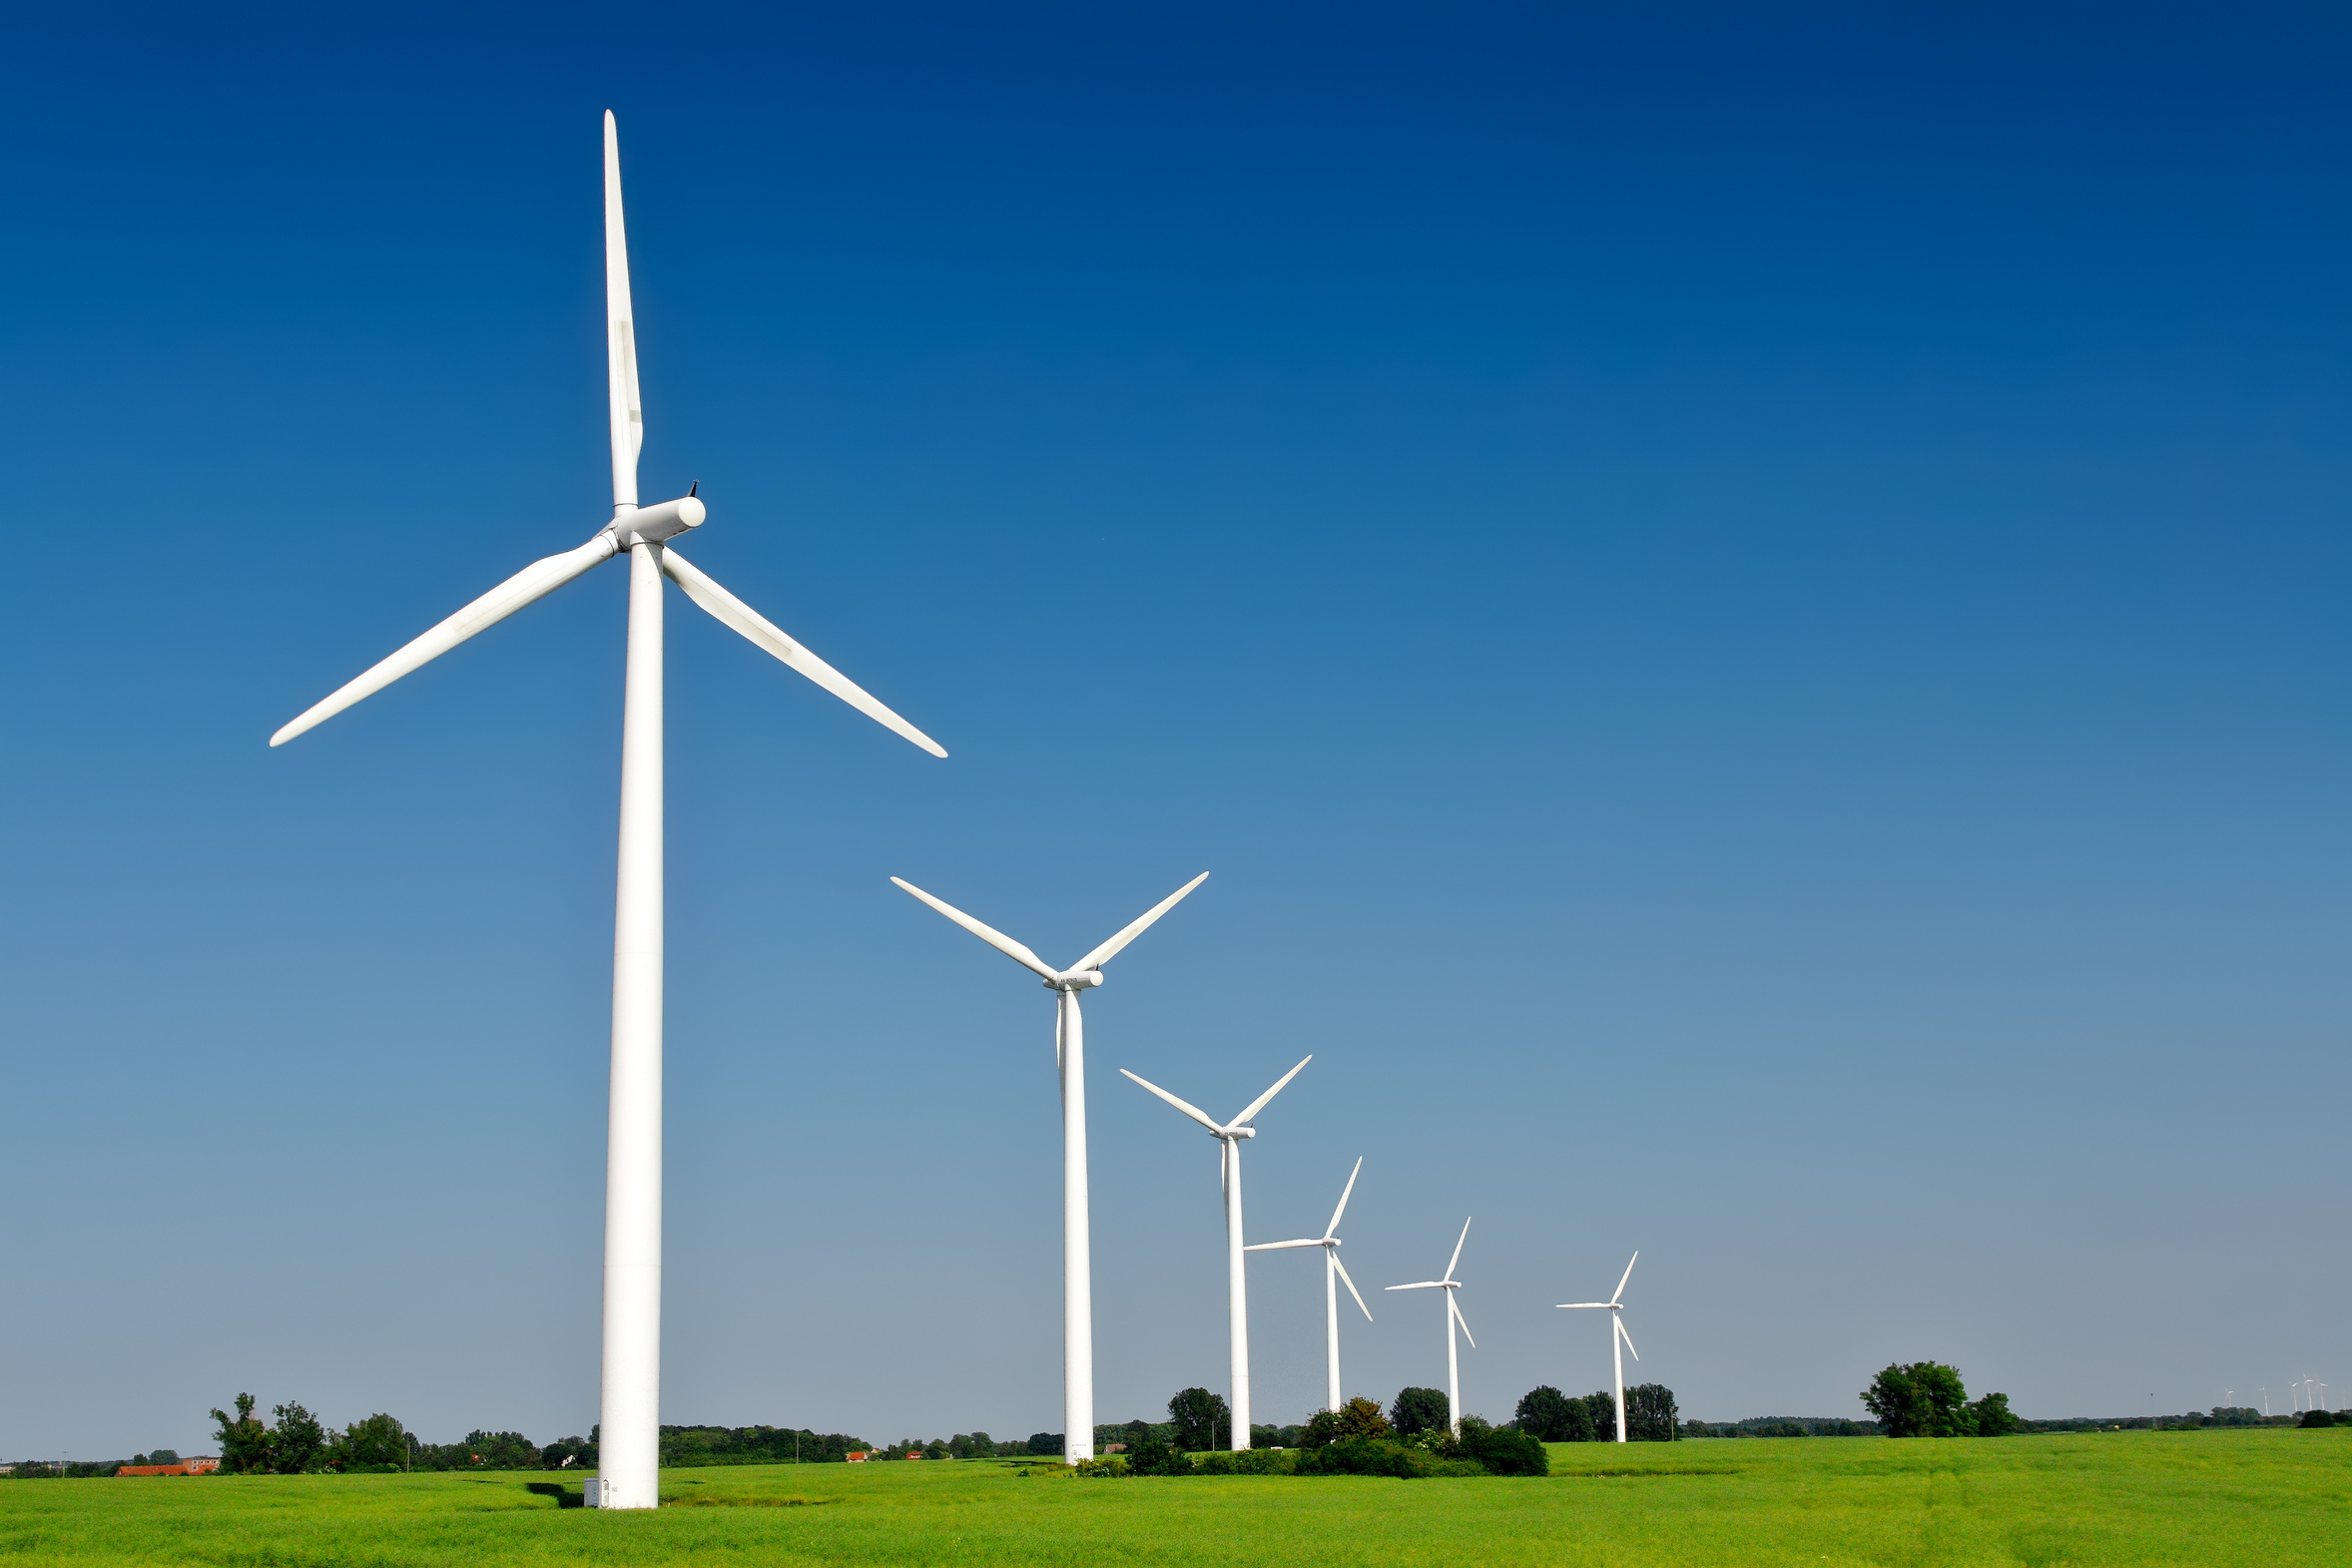 Windkraftanlagen in der freien Landschaft